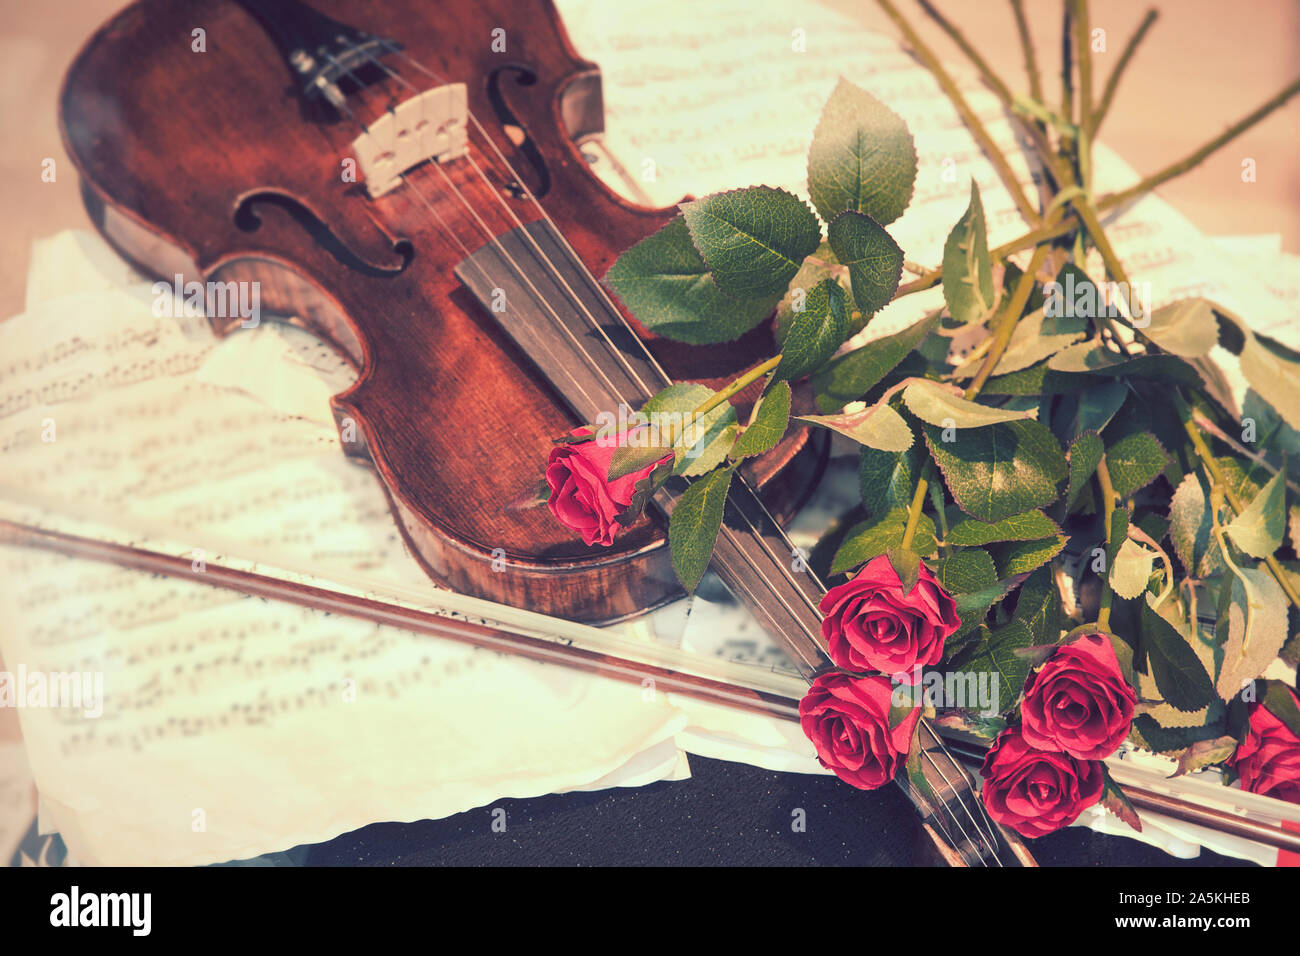 Violine mit roten Rosen, Musikinstrument string mit rotem Blumenstrauß und Blätter Musik (vintage Filter Effekt) Stockfoto